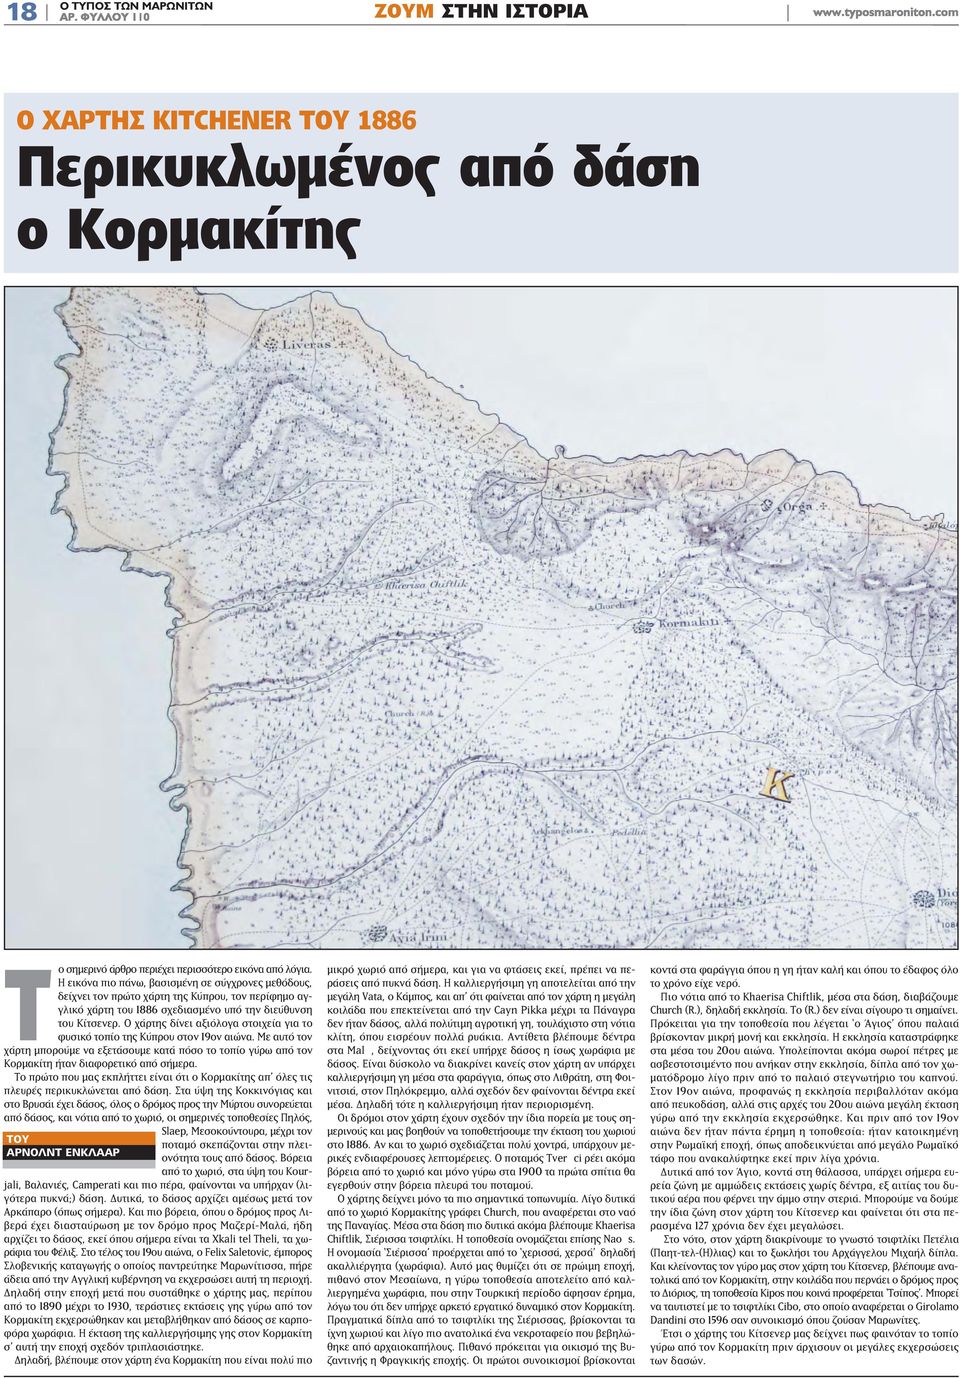 Ο χάρτης δίνει αξιόλογα στοιχεία για το φυσικό τοπίο της Κύπρου στον 19ον αιώνα. Με αυτό τον χάρτη μπορούμε να εξετάσουμε κατά πόσο το τοπίο γύρω από τον Κορμακίτη ήταν διαφορετικό από σήμερα.